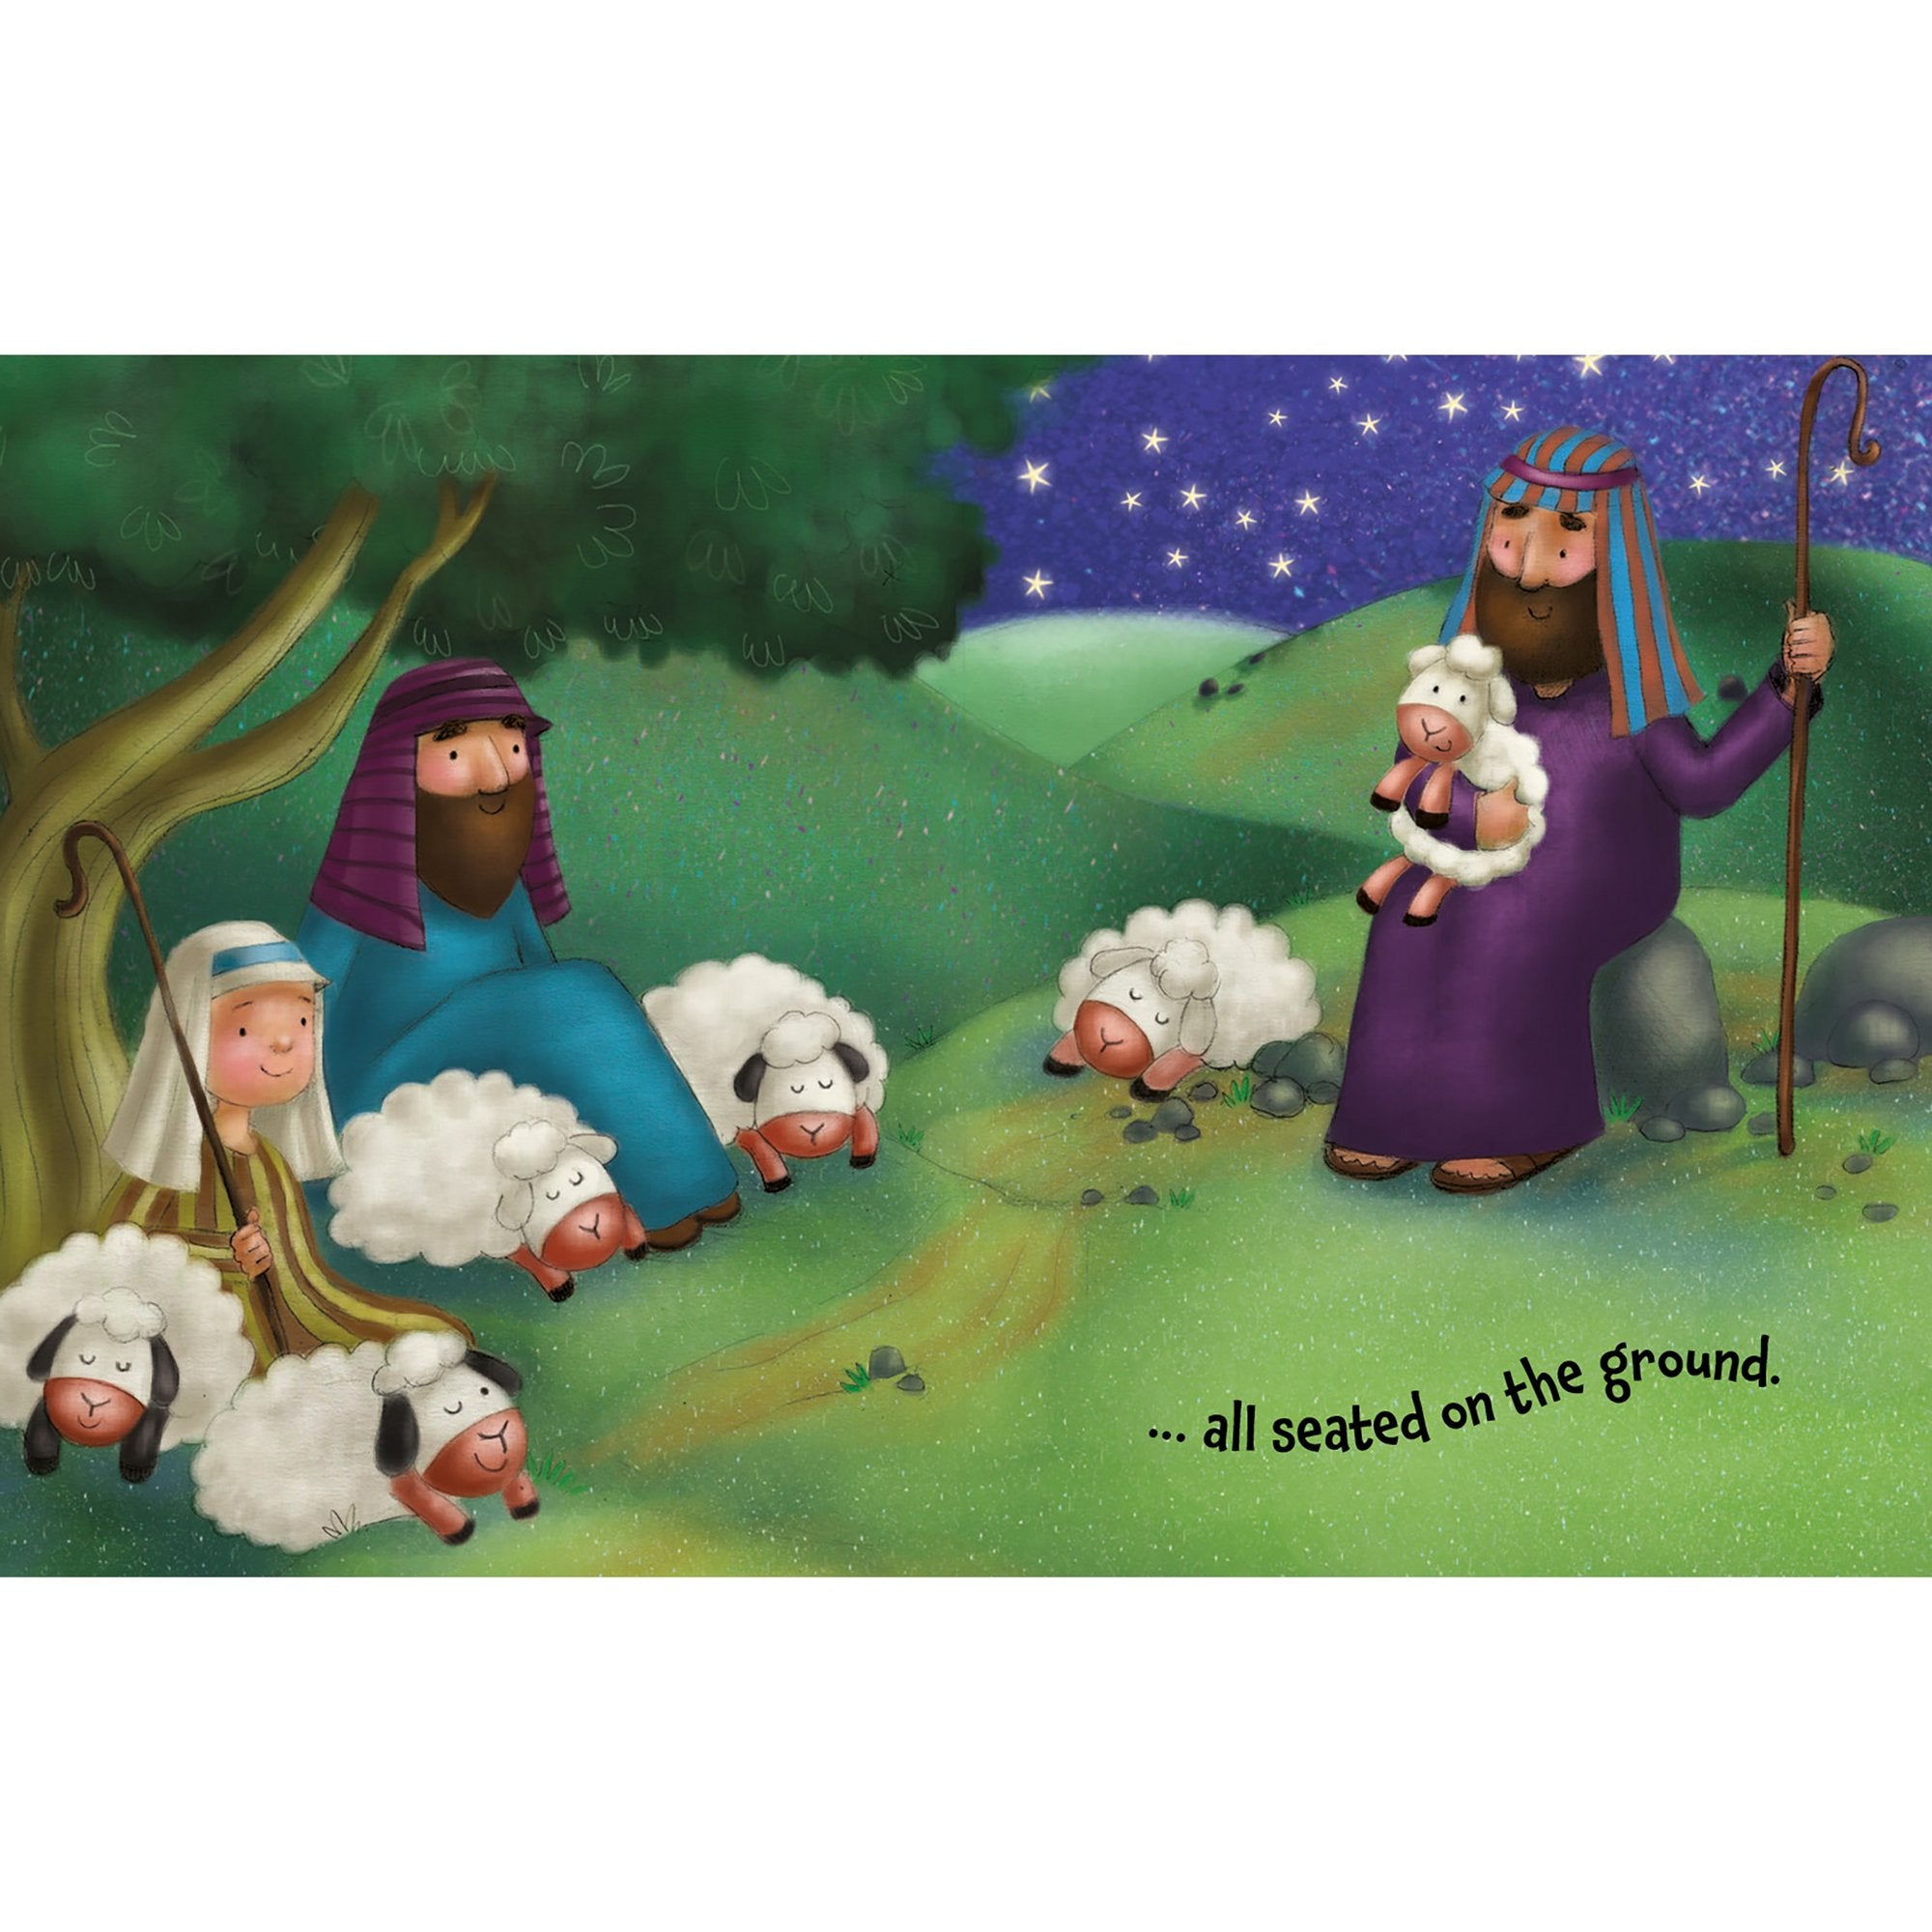 Christmas Giftbook - While Shepherd's Watched